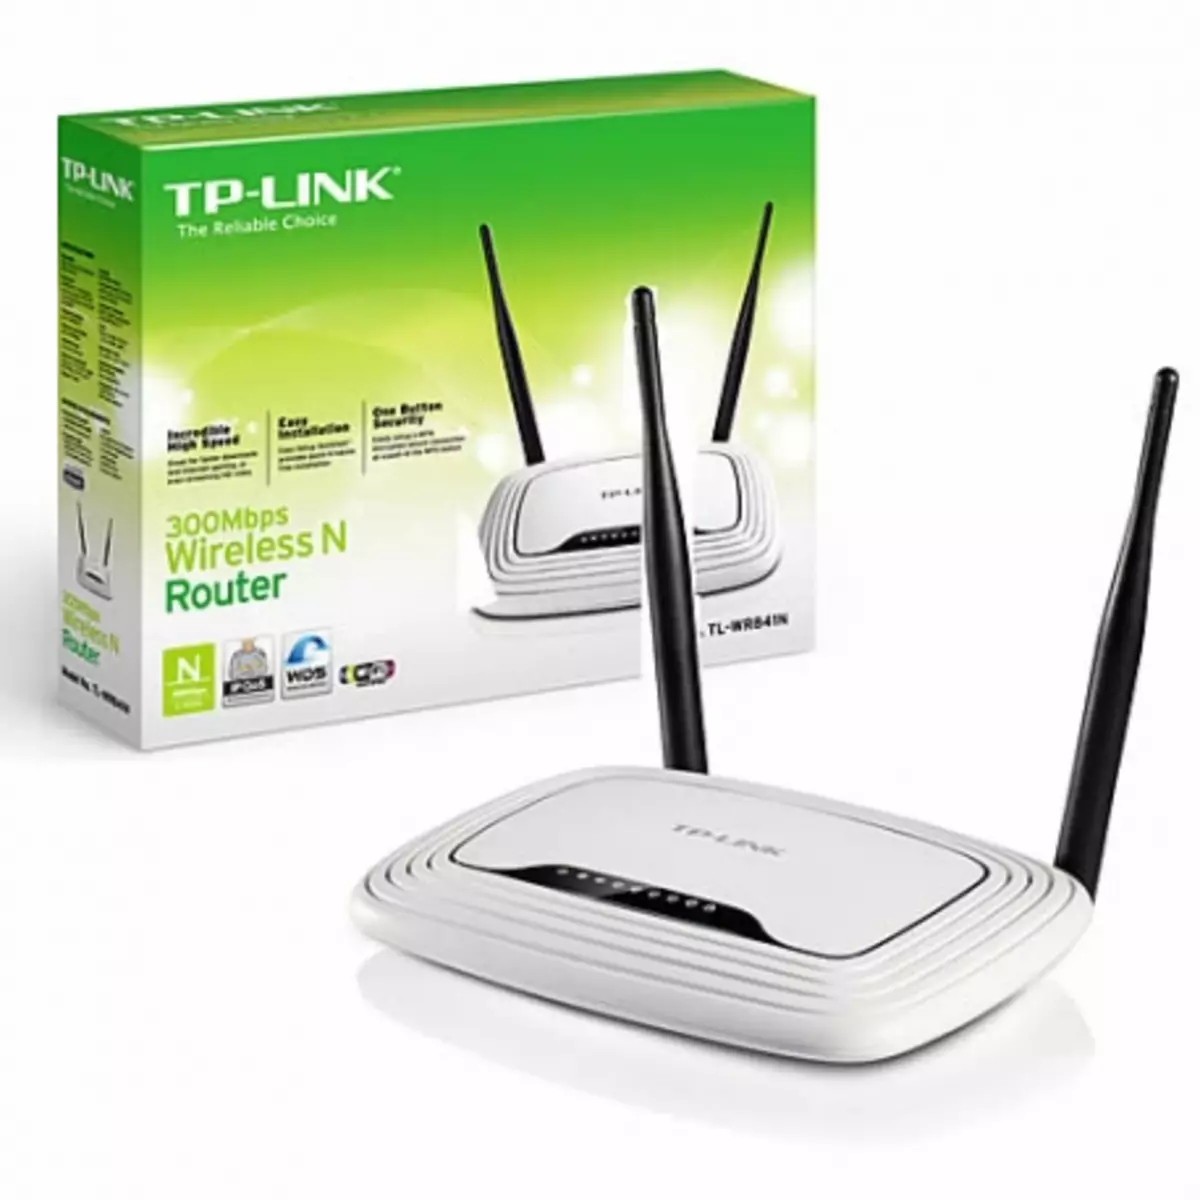 TP-link tl-wr841n backup yemarongero eiyo router pamberi peterware